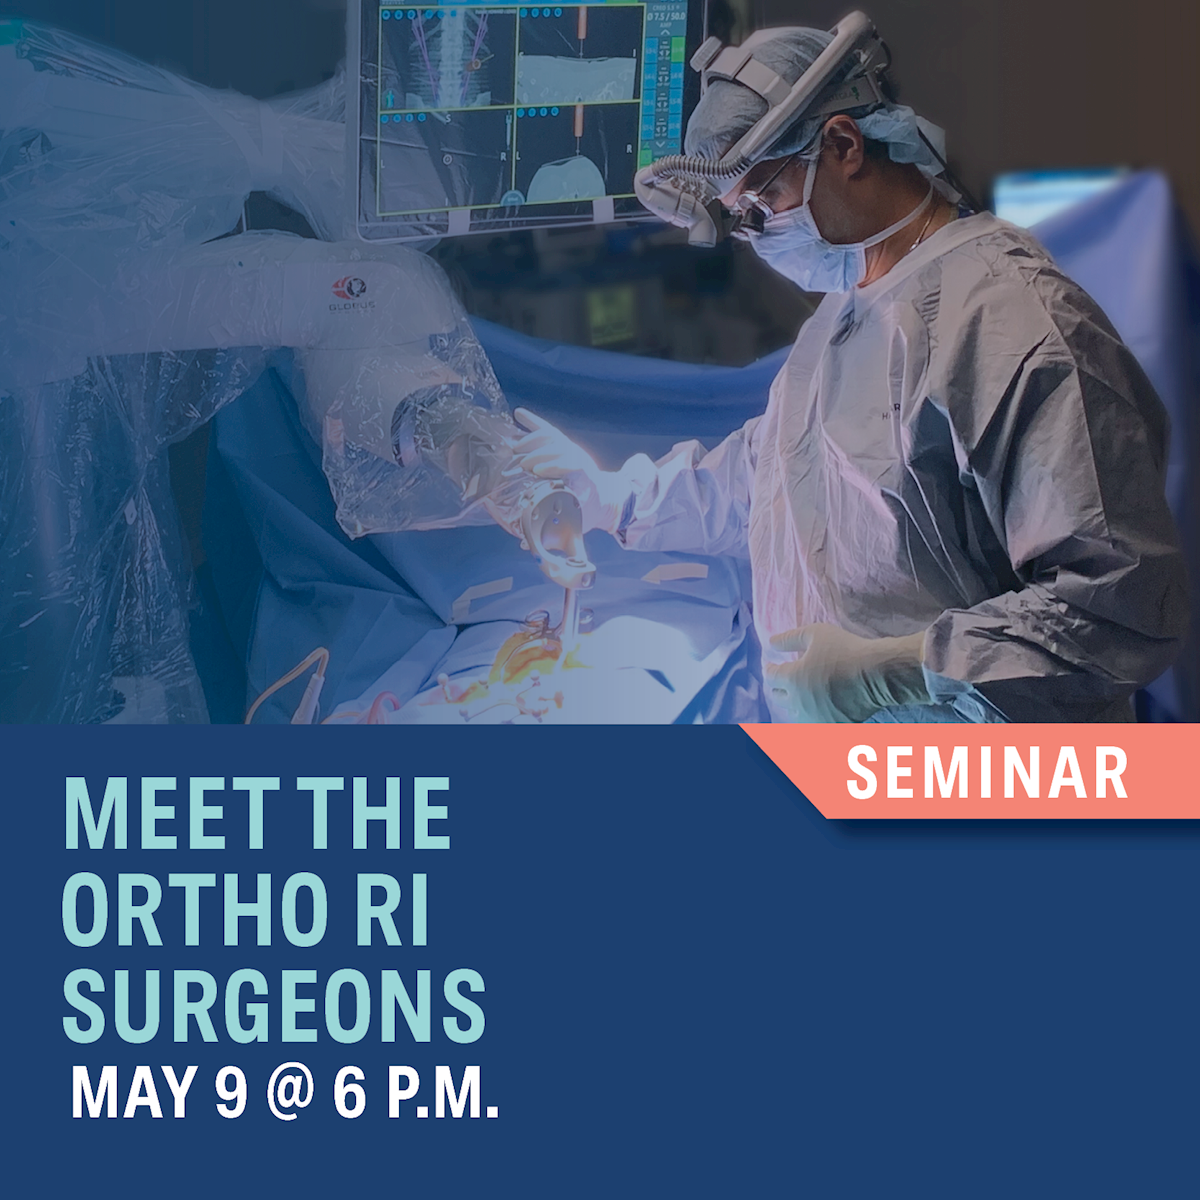 Meet the Ortho RI Surgeons